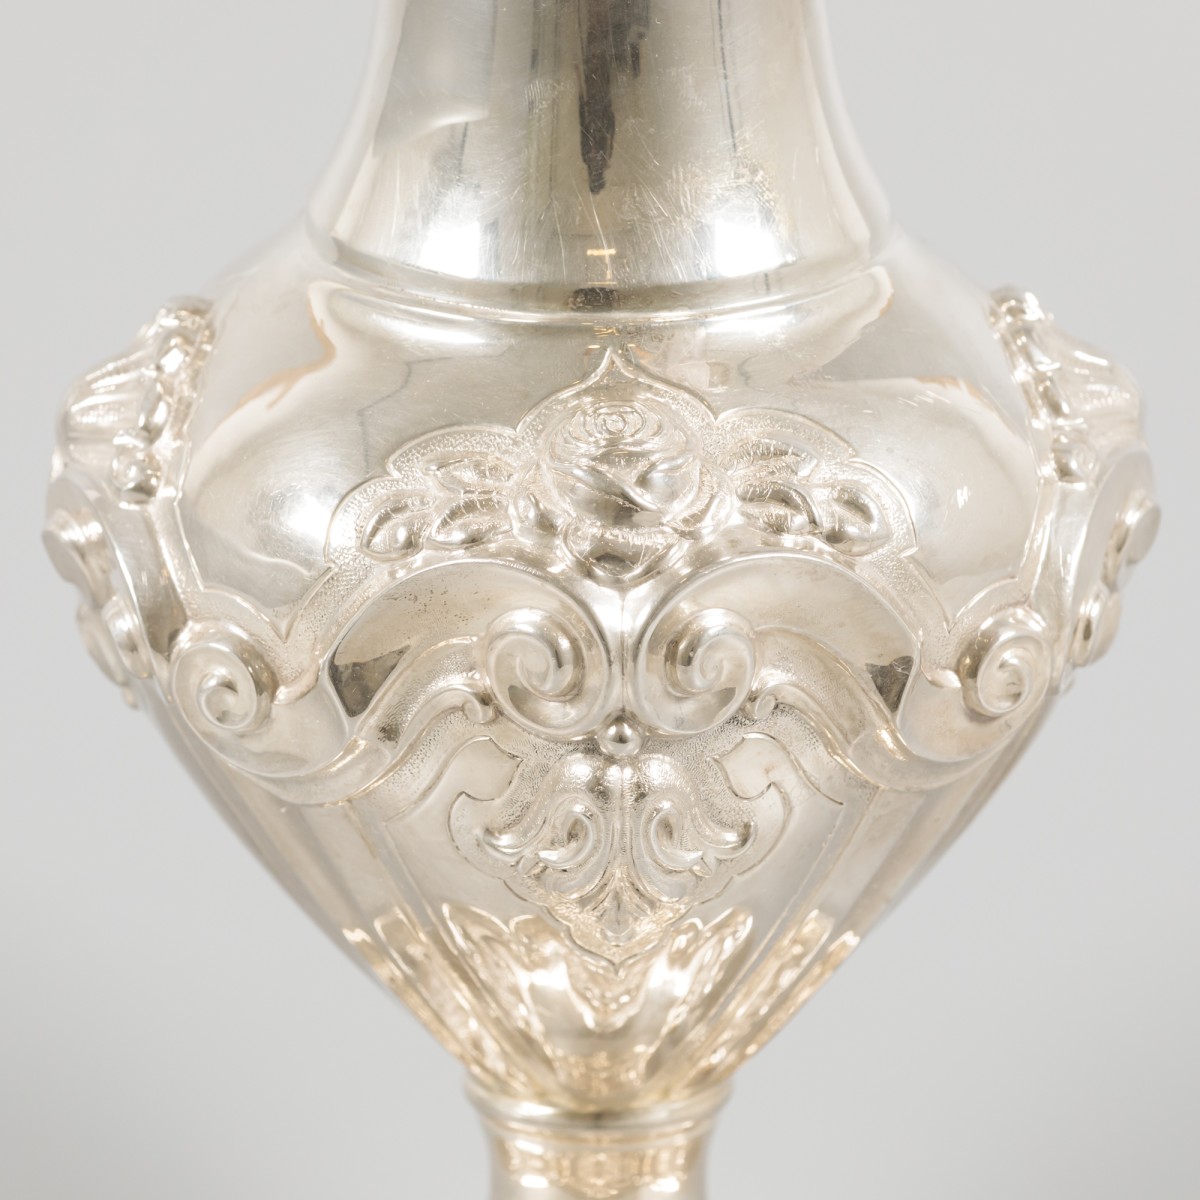 Flower vase silver. - Image 2 of 6